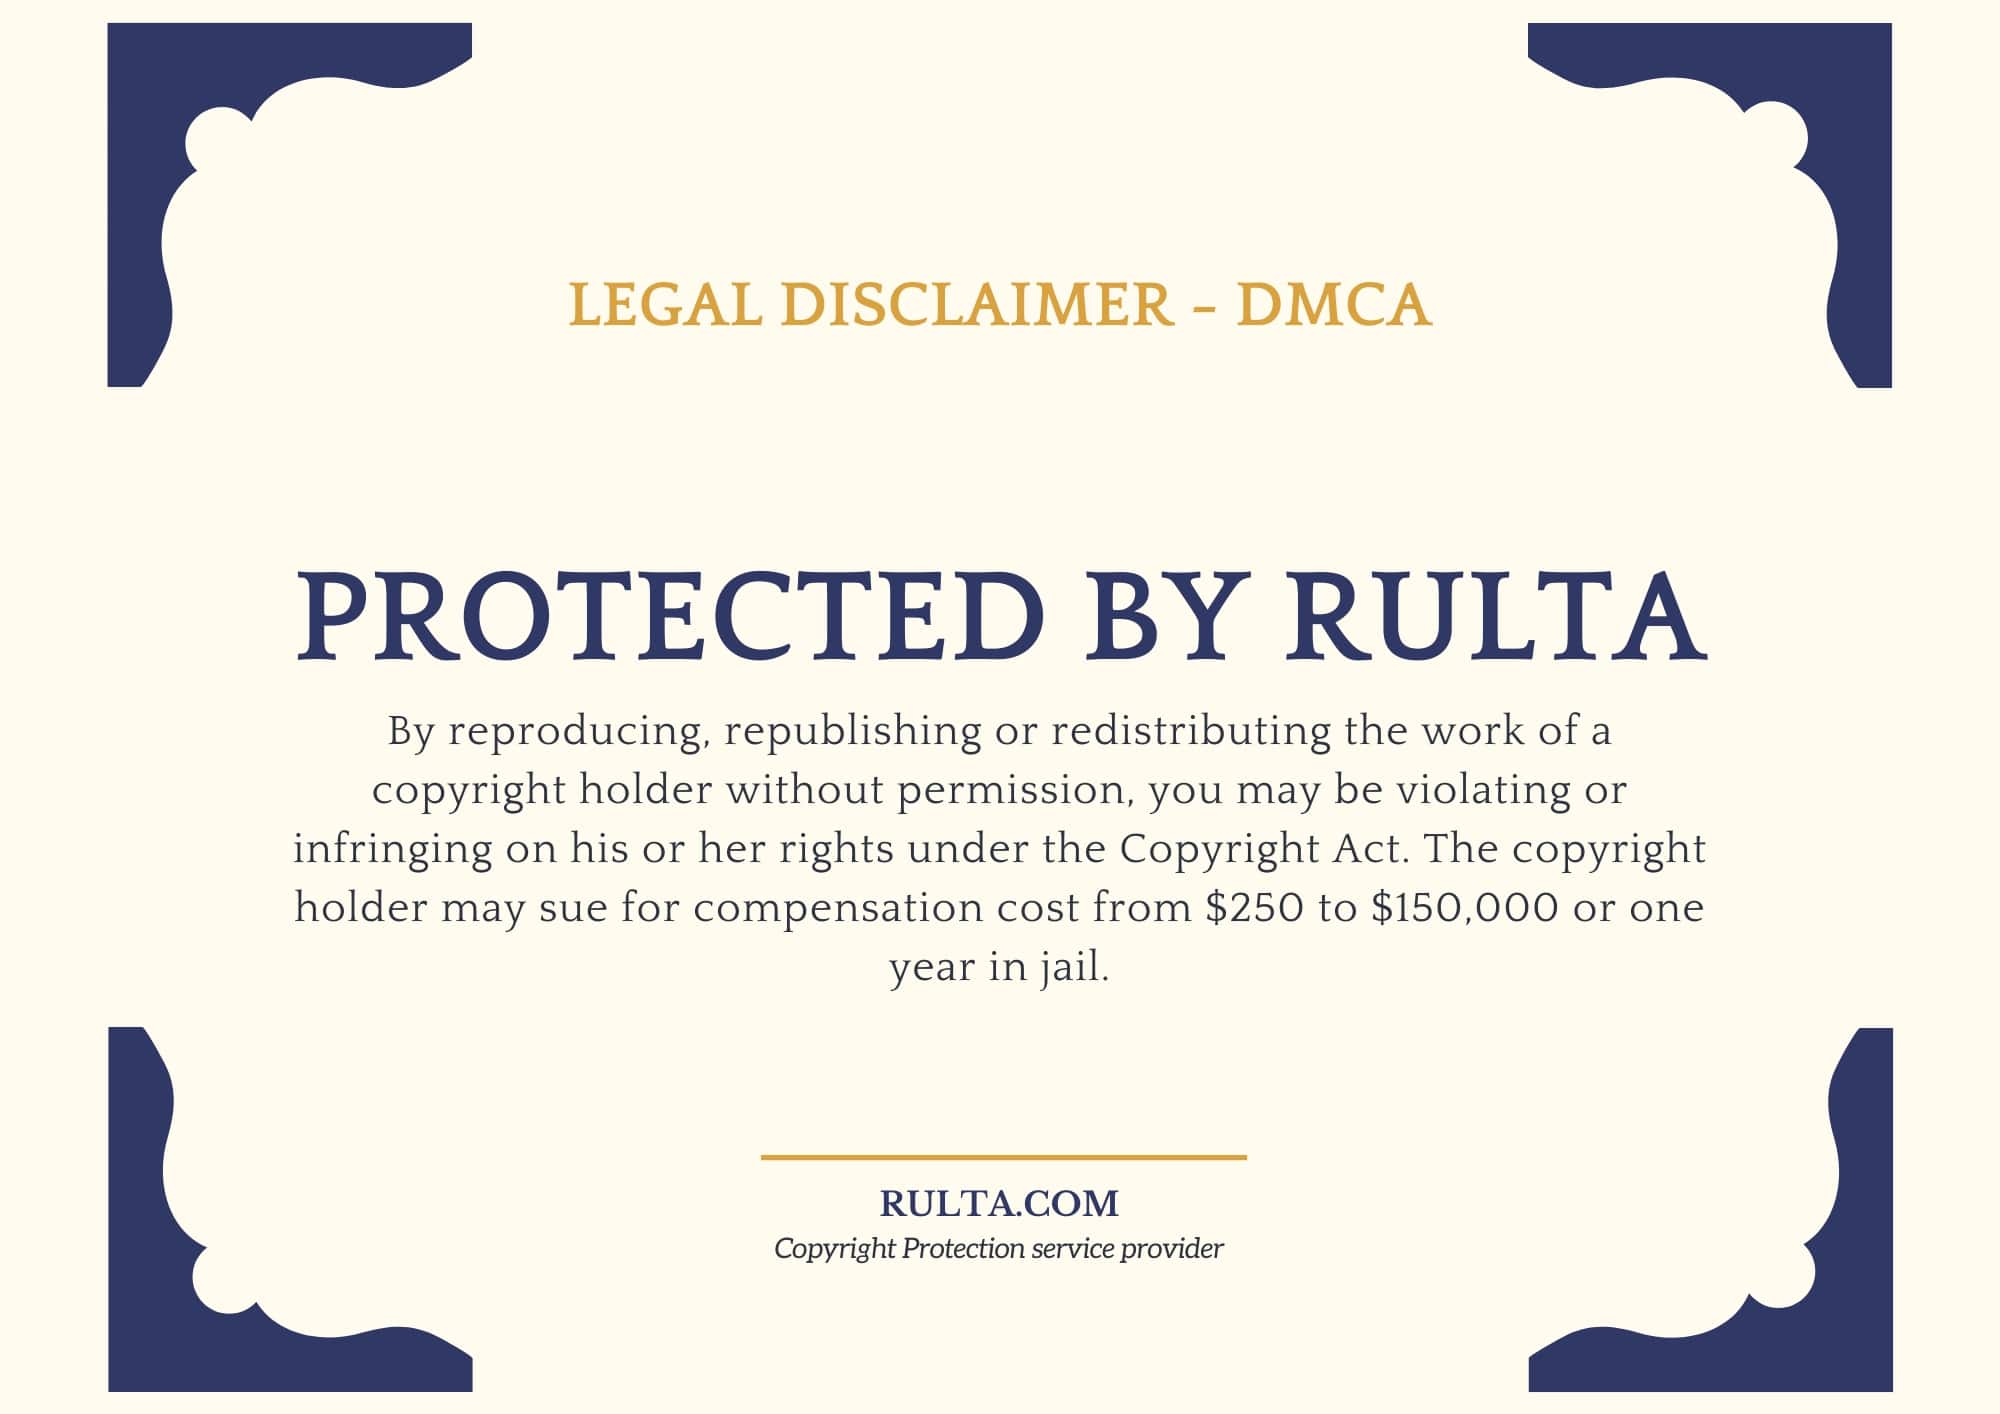 DMCA badge by Rulta - 3